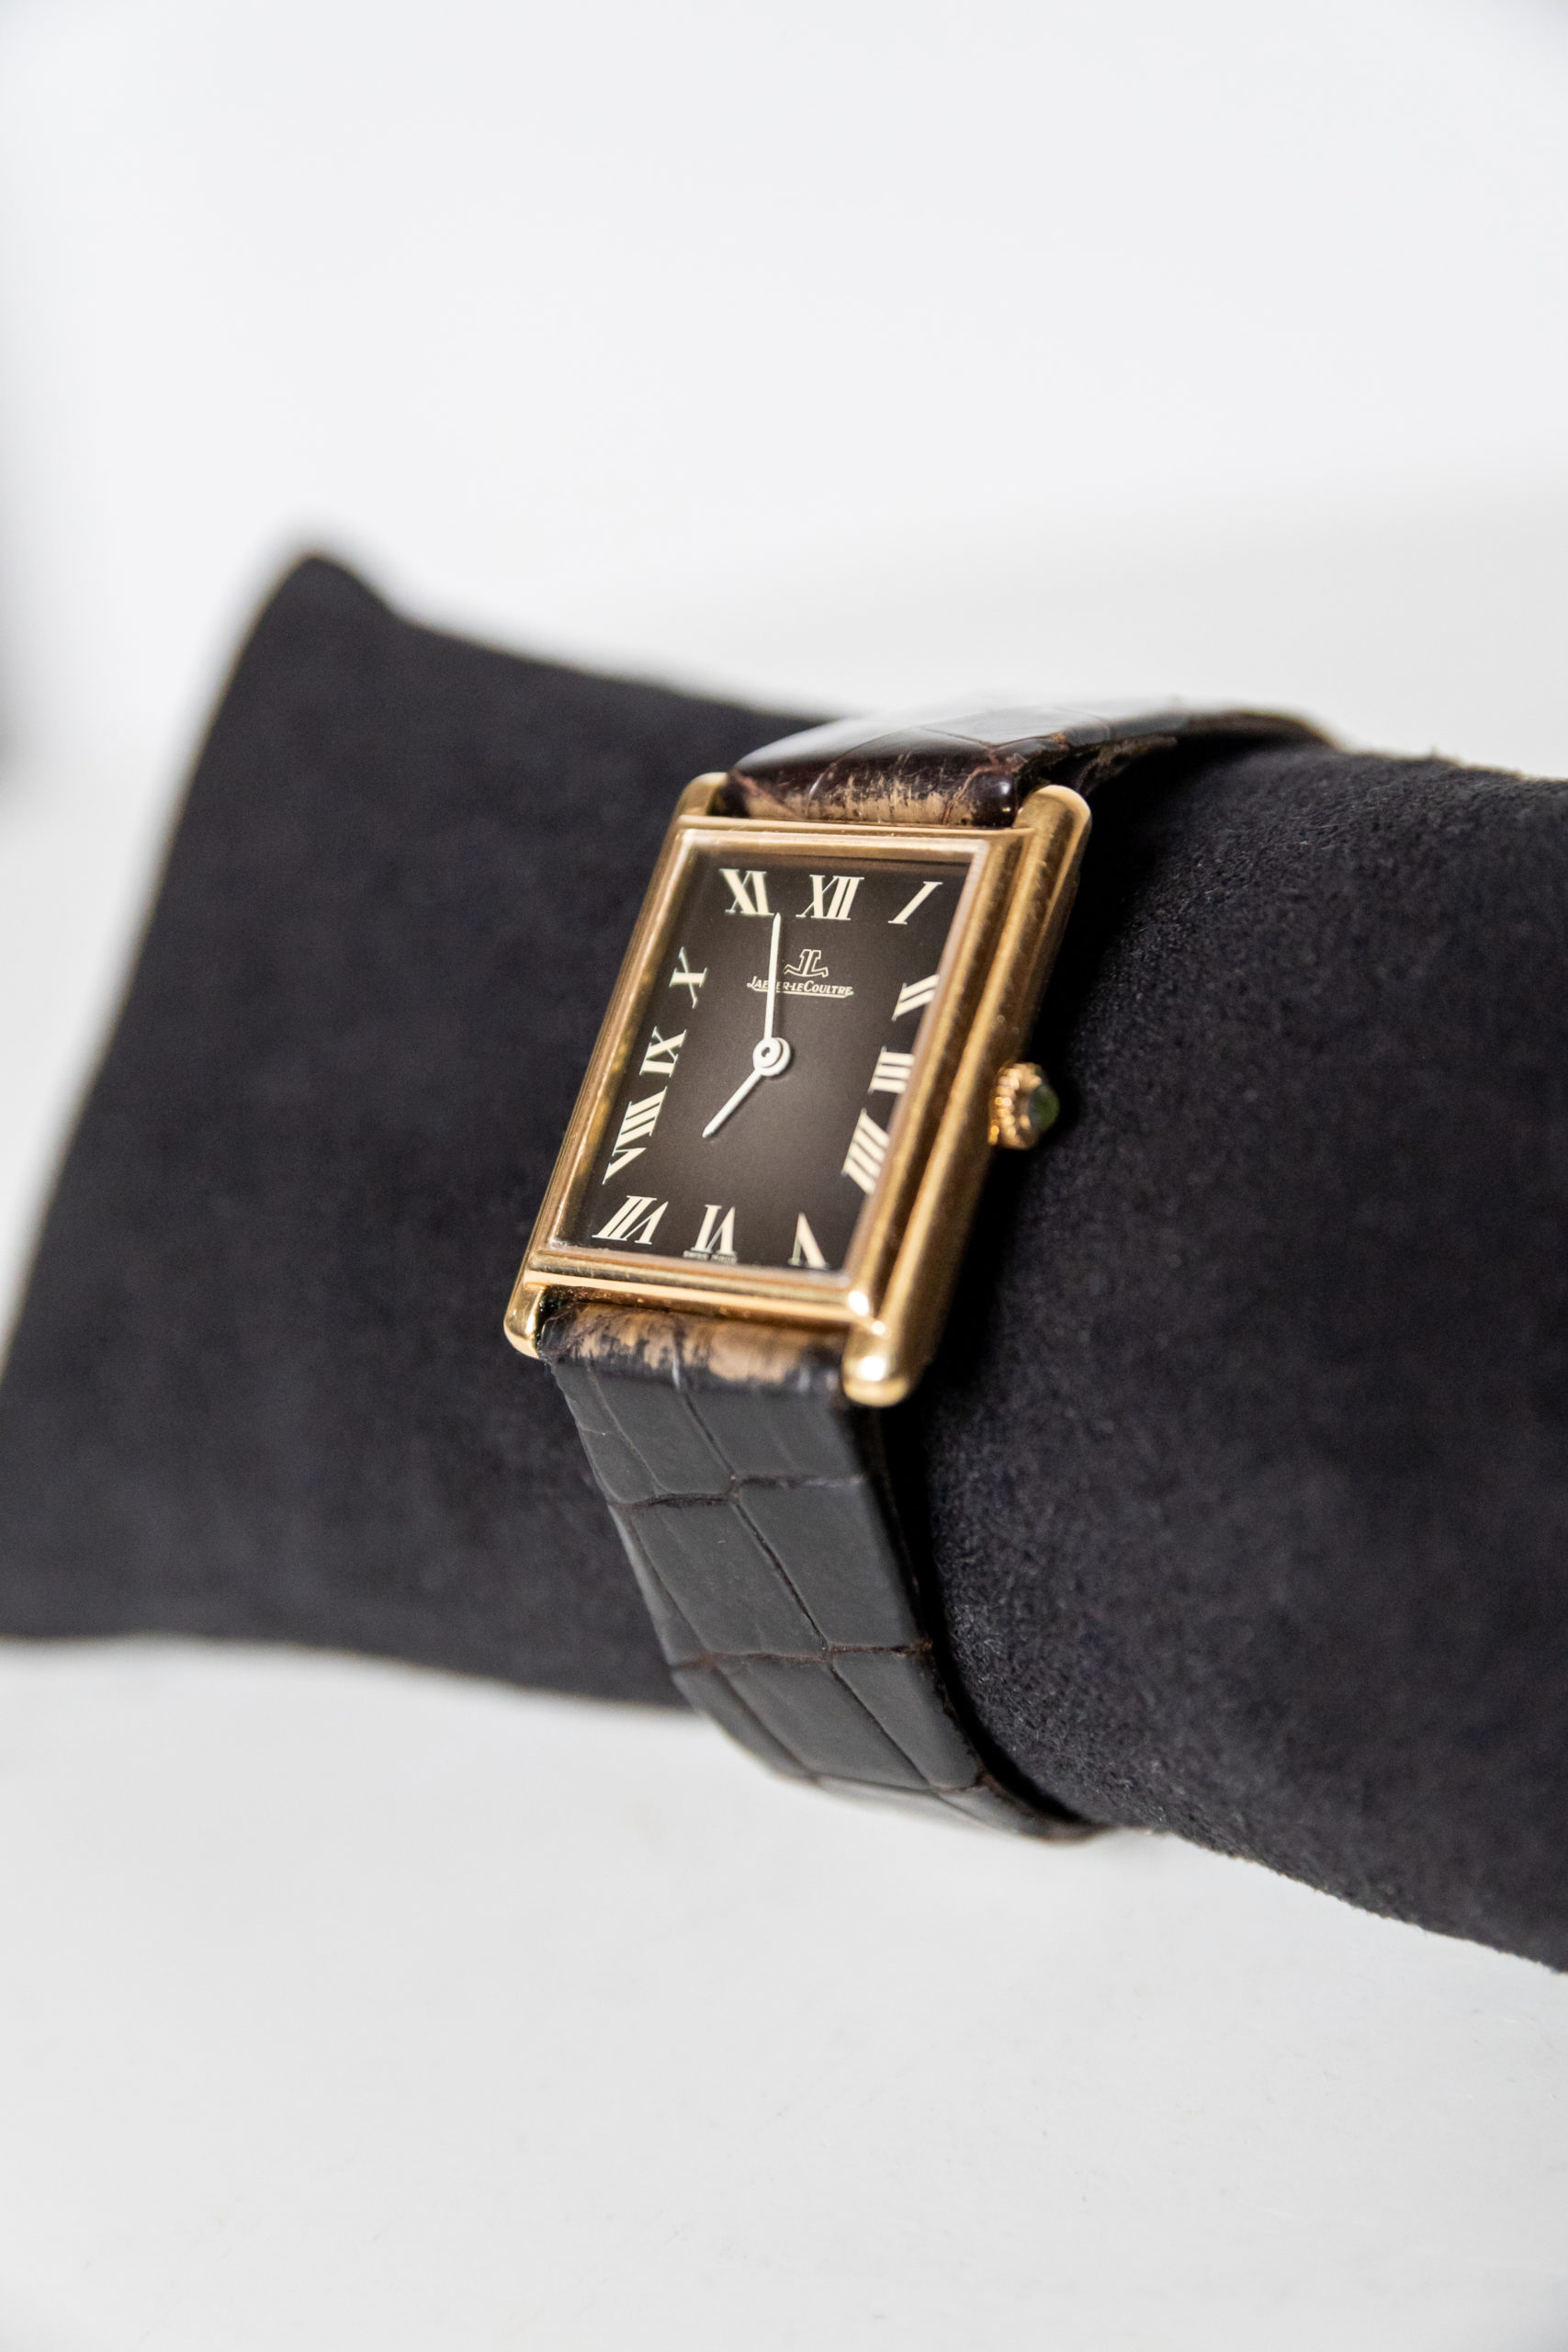 Jeager-lecoultre-homme-femme-collection-montre-vintage-or-aurore-morisse-chestret5-la-maison-de-chestret-liège-affaire-conclue2